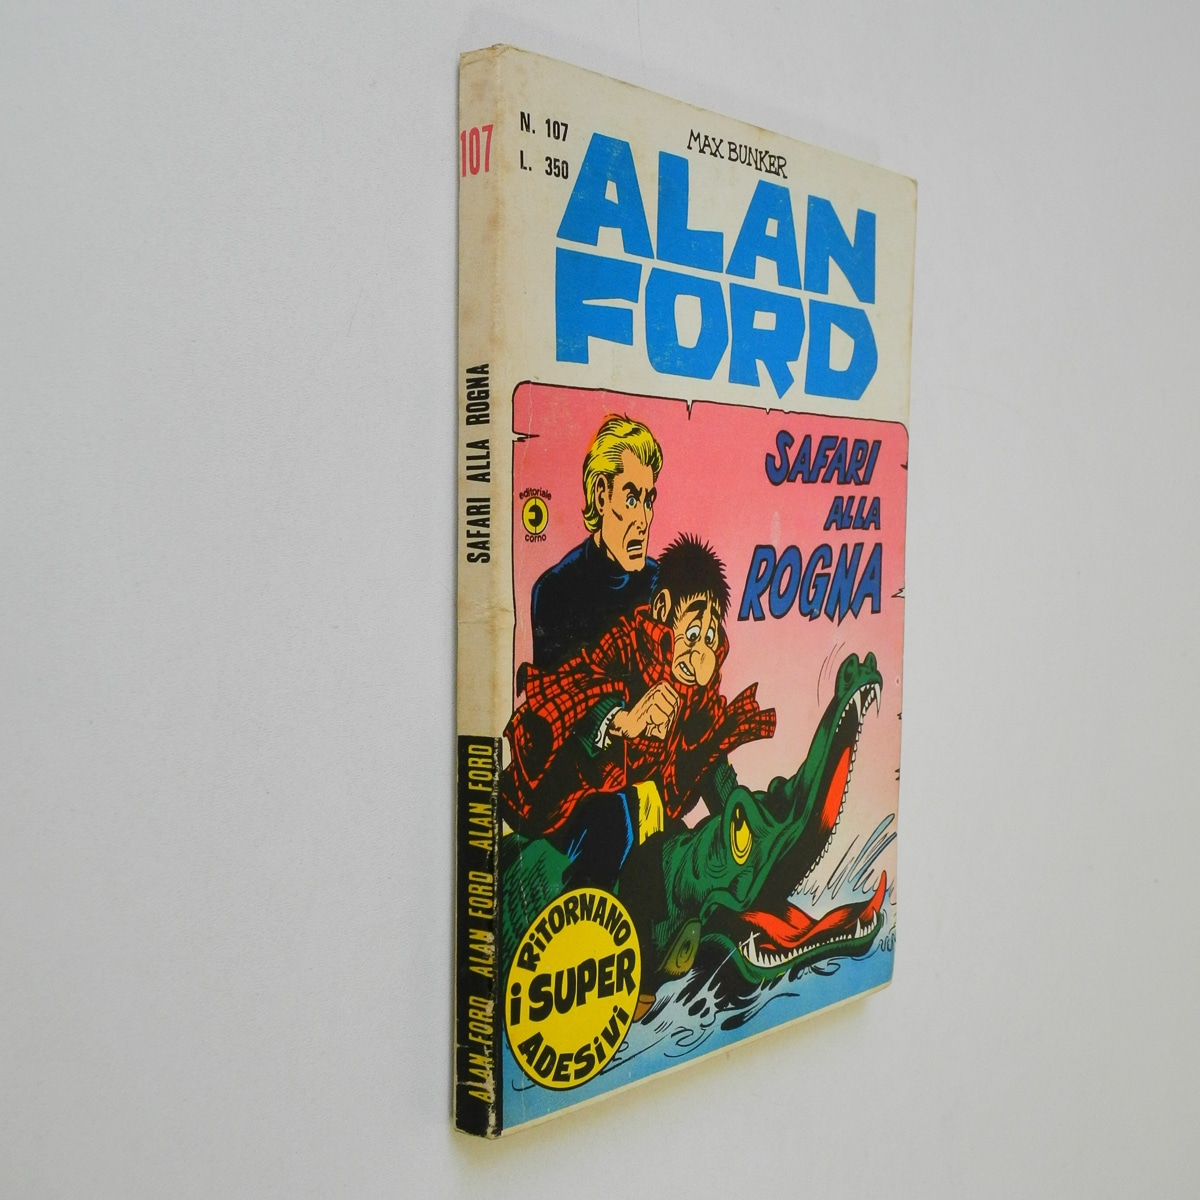 Alan Ford n. 107 con Adesivi Safari alla rogna